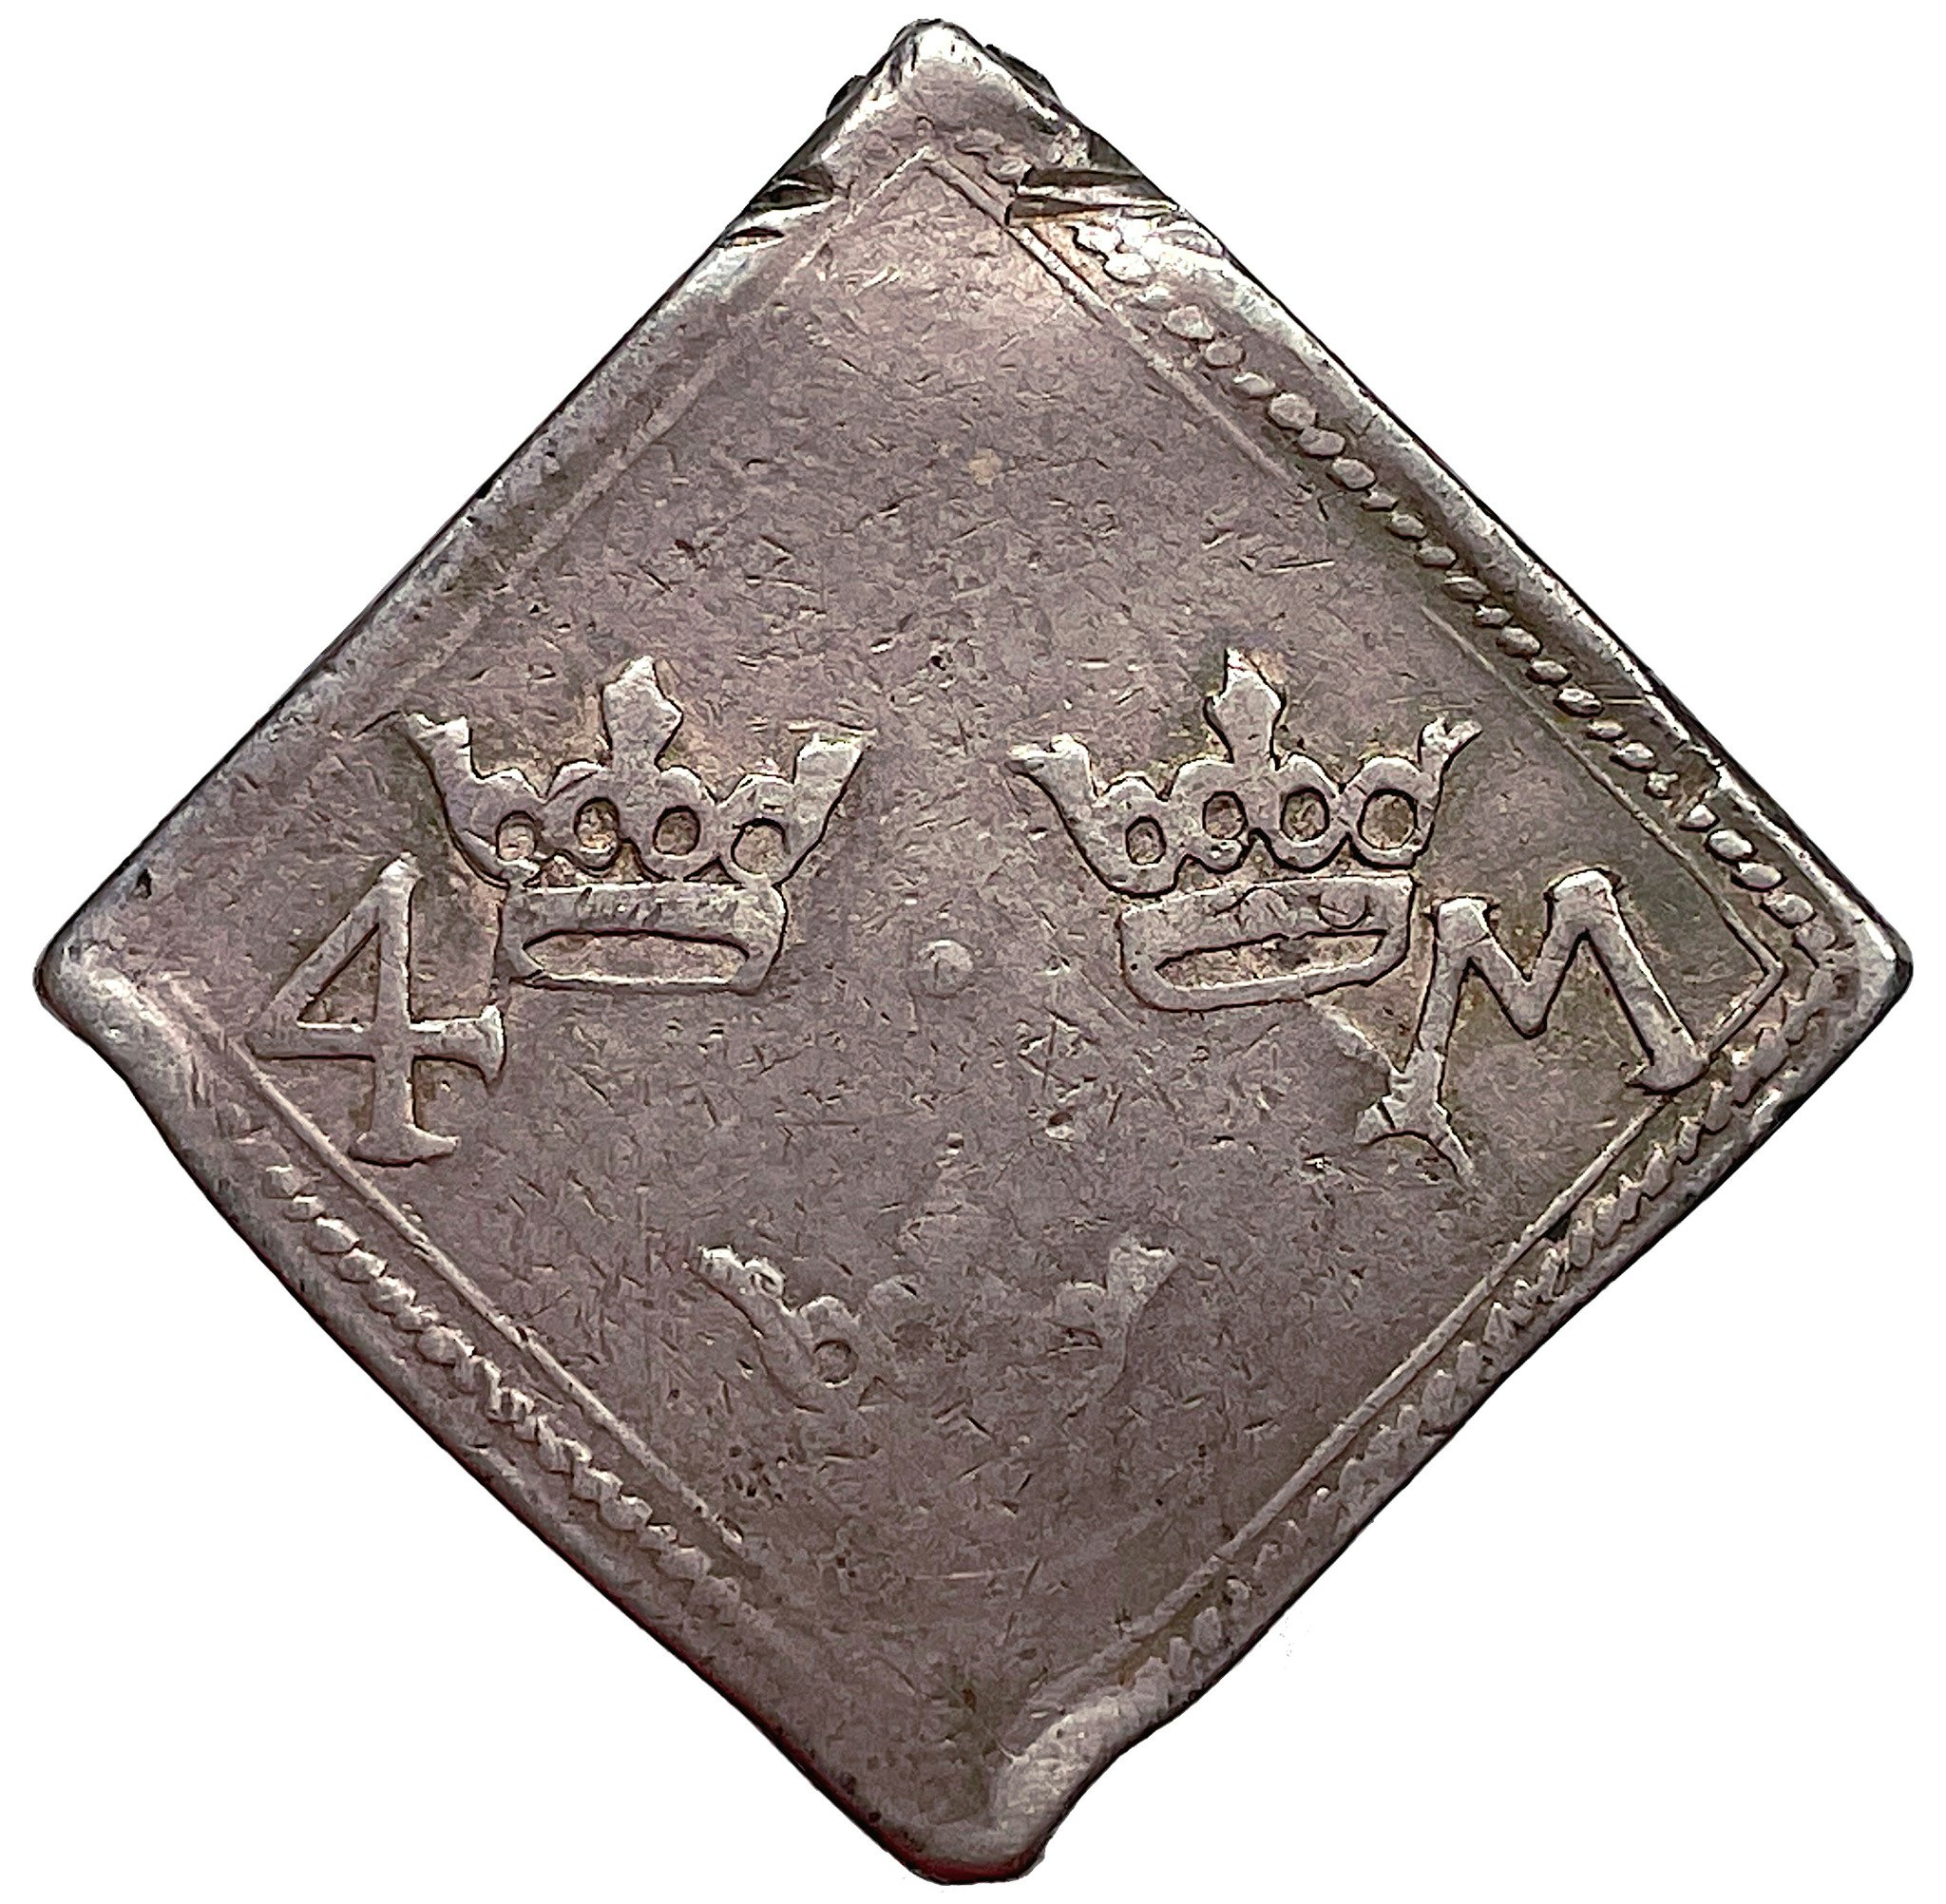 Blodsklipping 4 Mark 1568 - Den svenska mynthistoriens mest ikoniska mynttyp präglad av hertigarna Johan och Karl